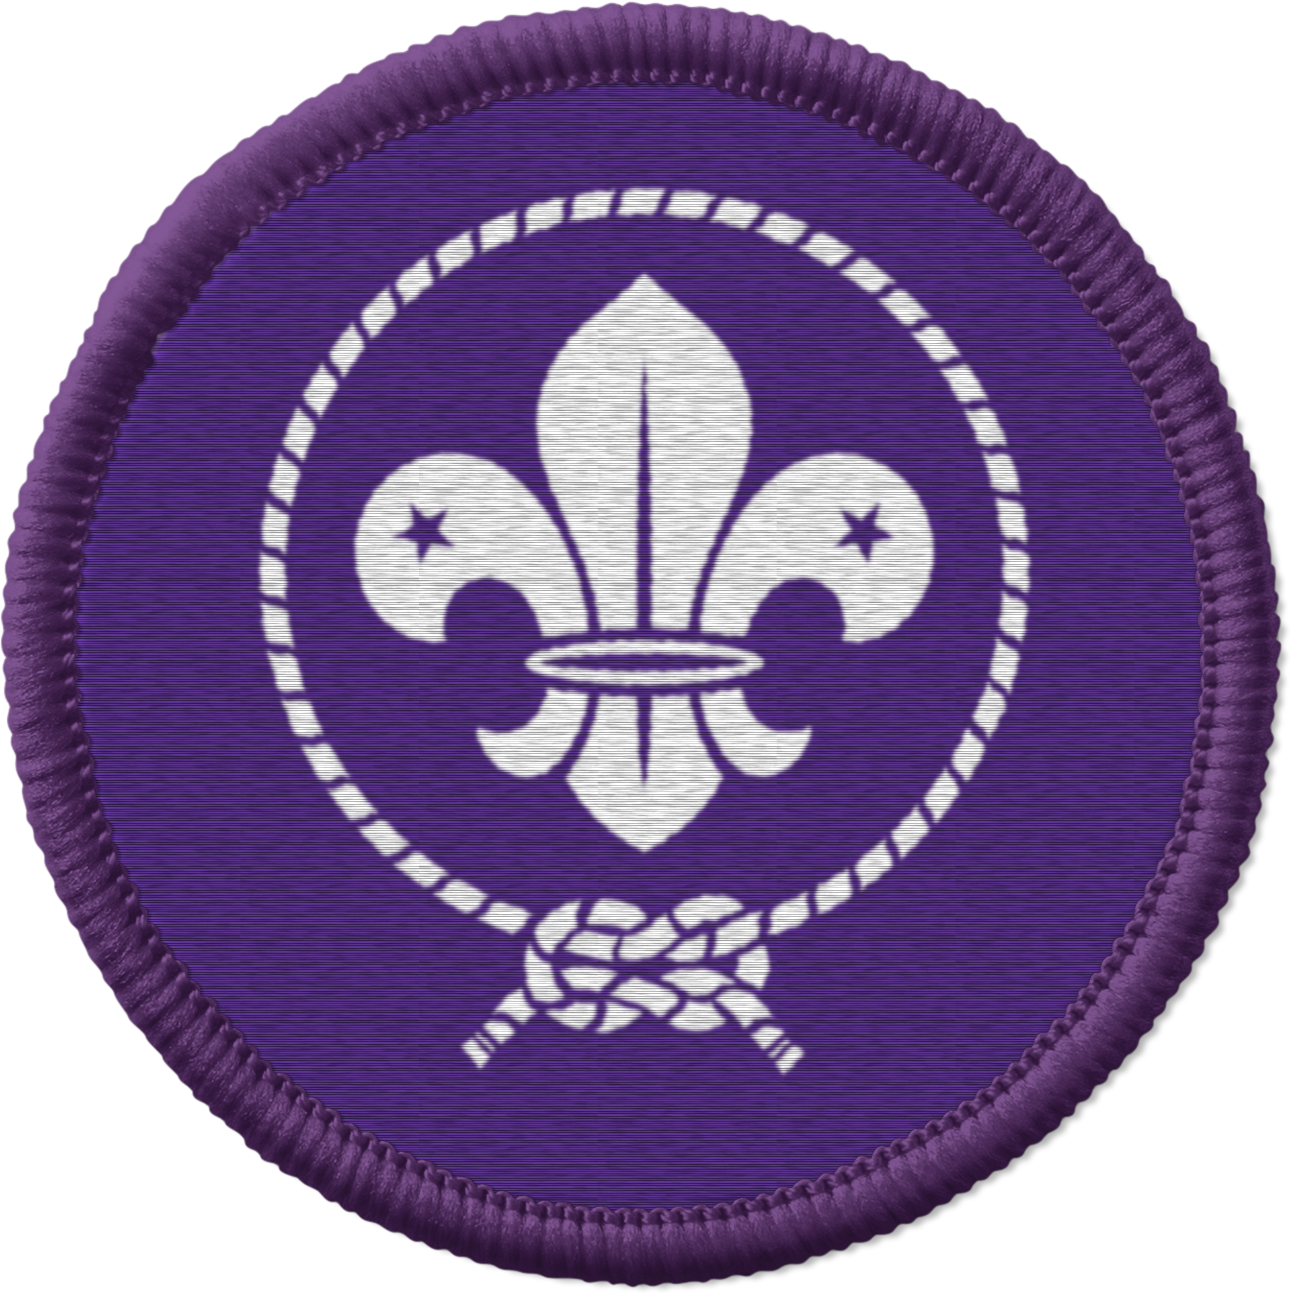 Membership badge